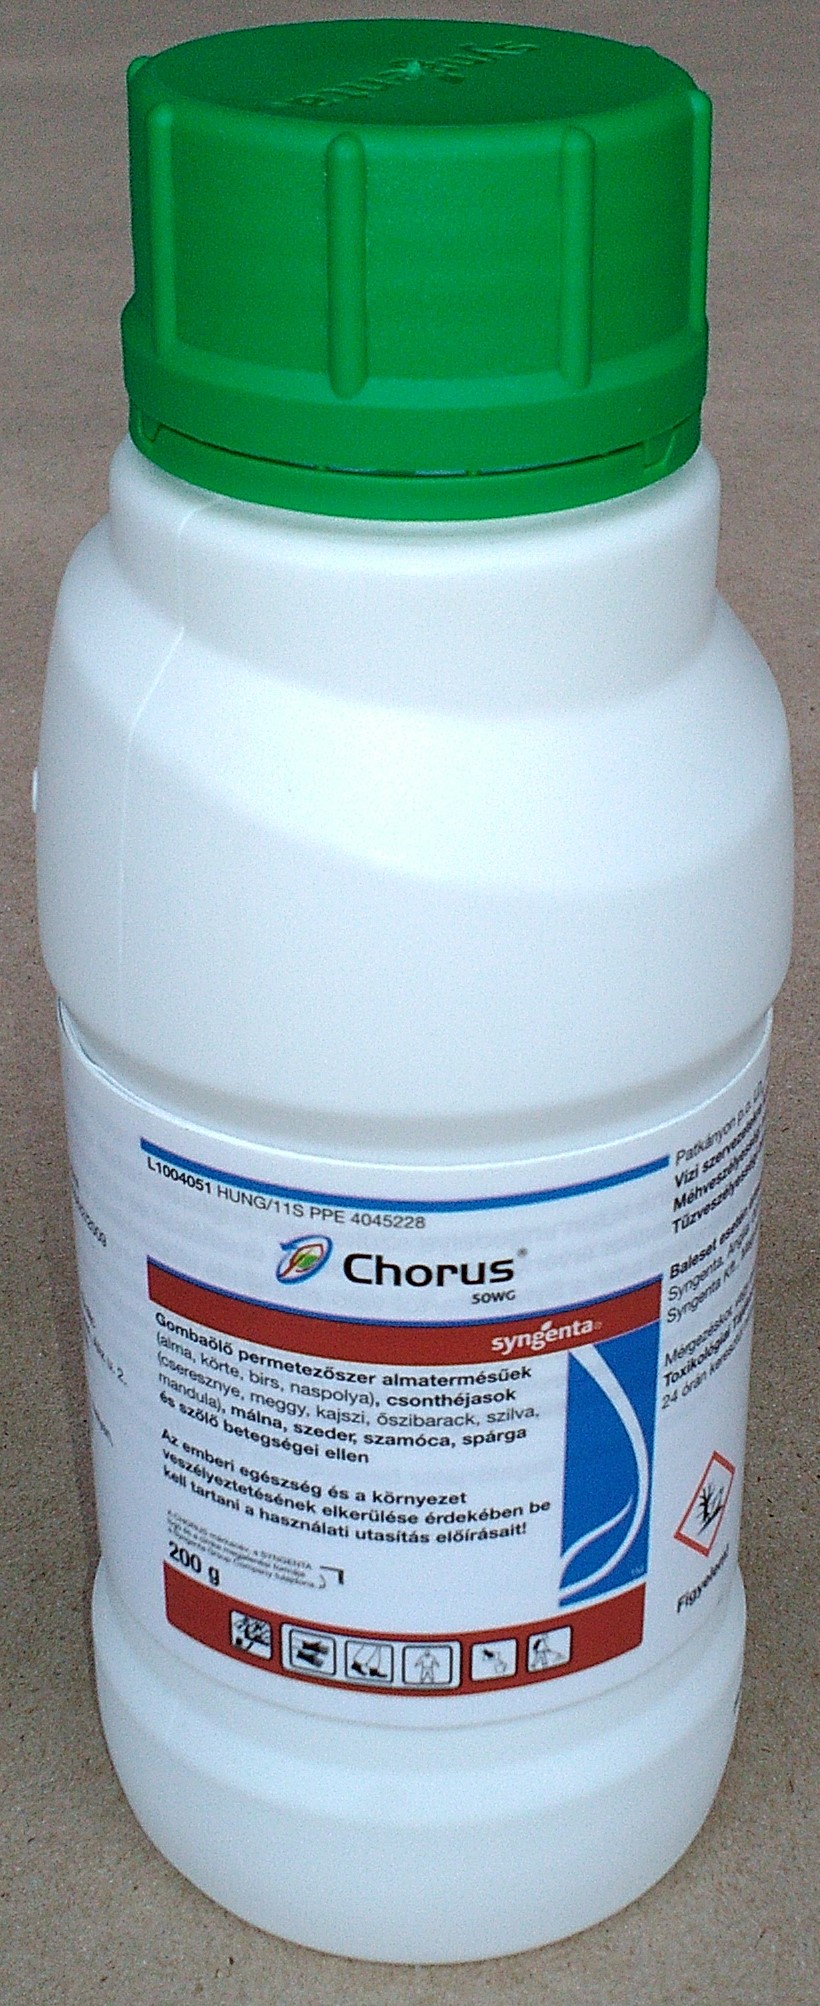 Chorus 50WG 0,2 kg